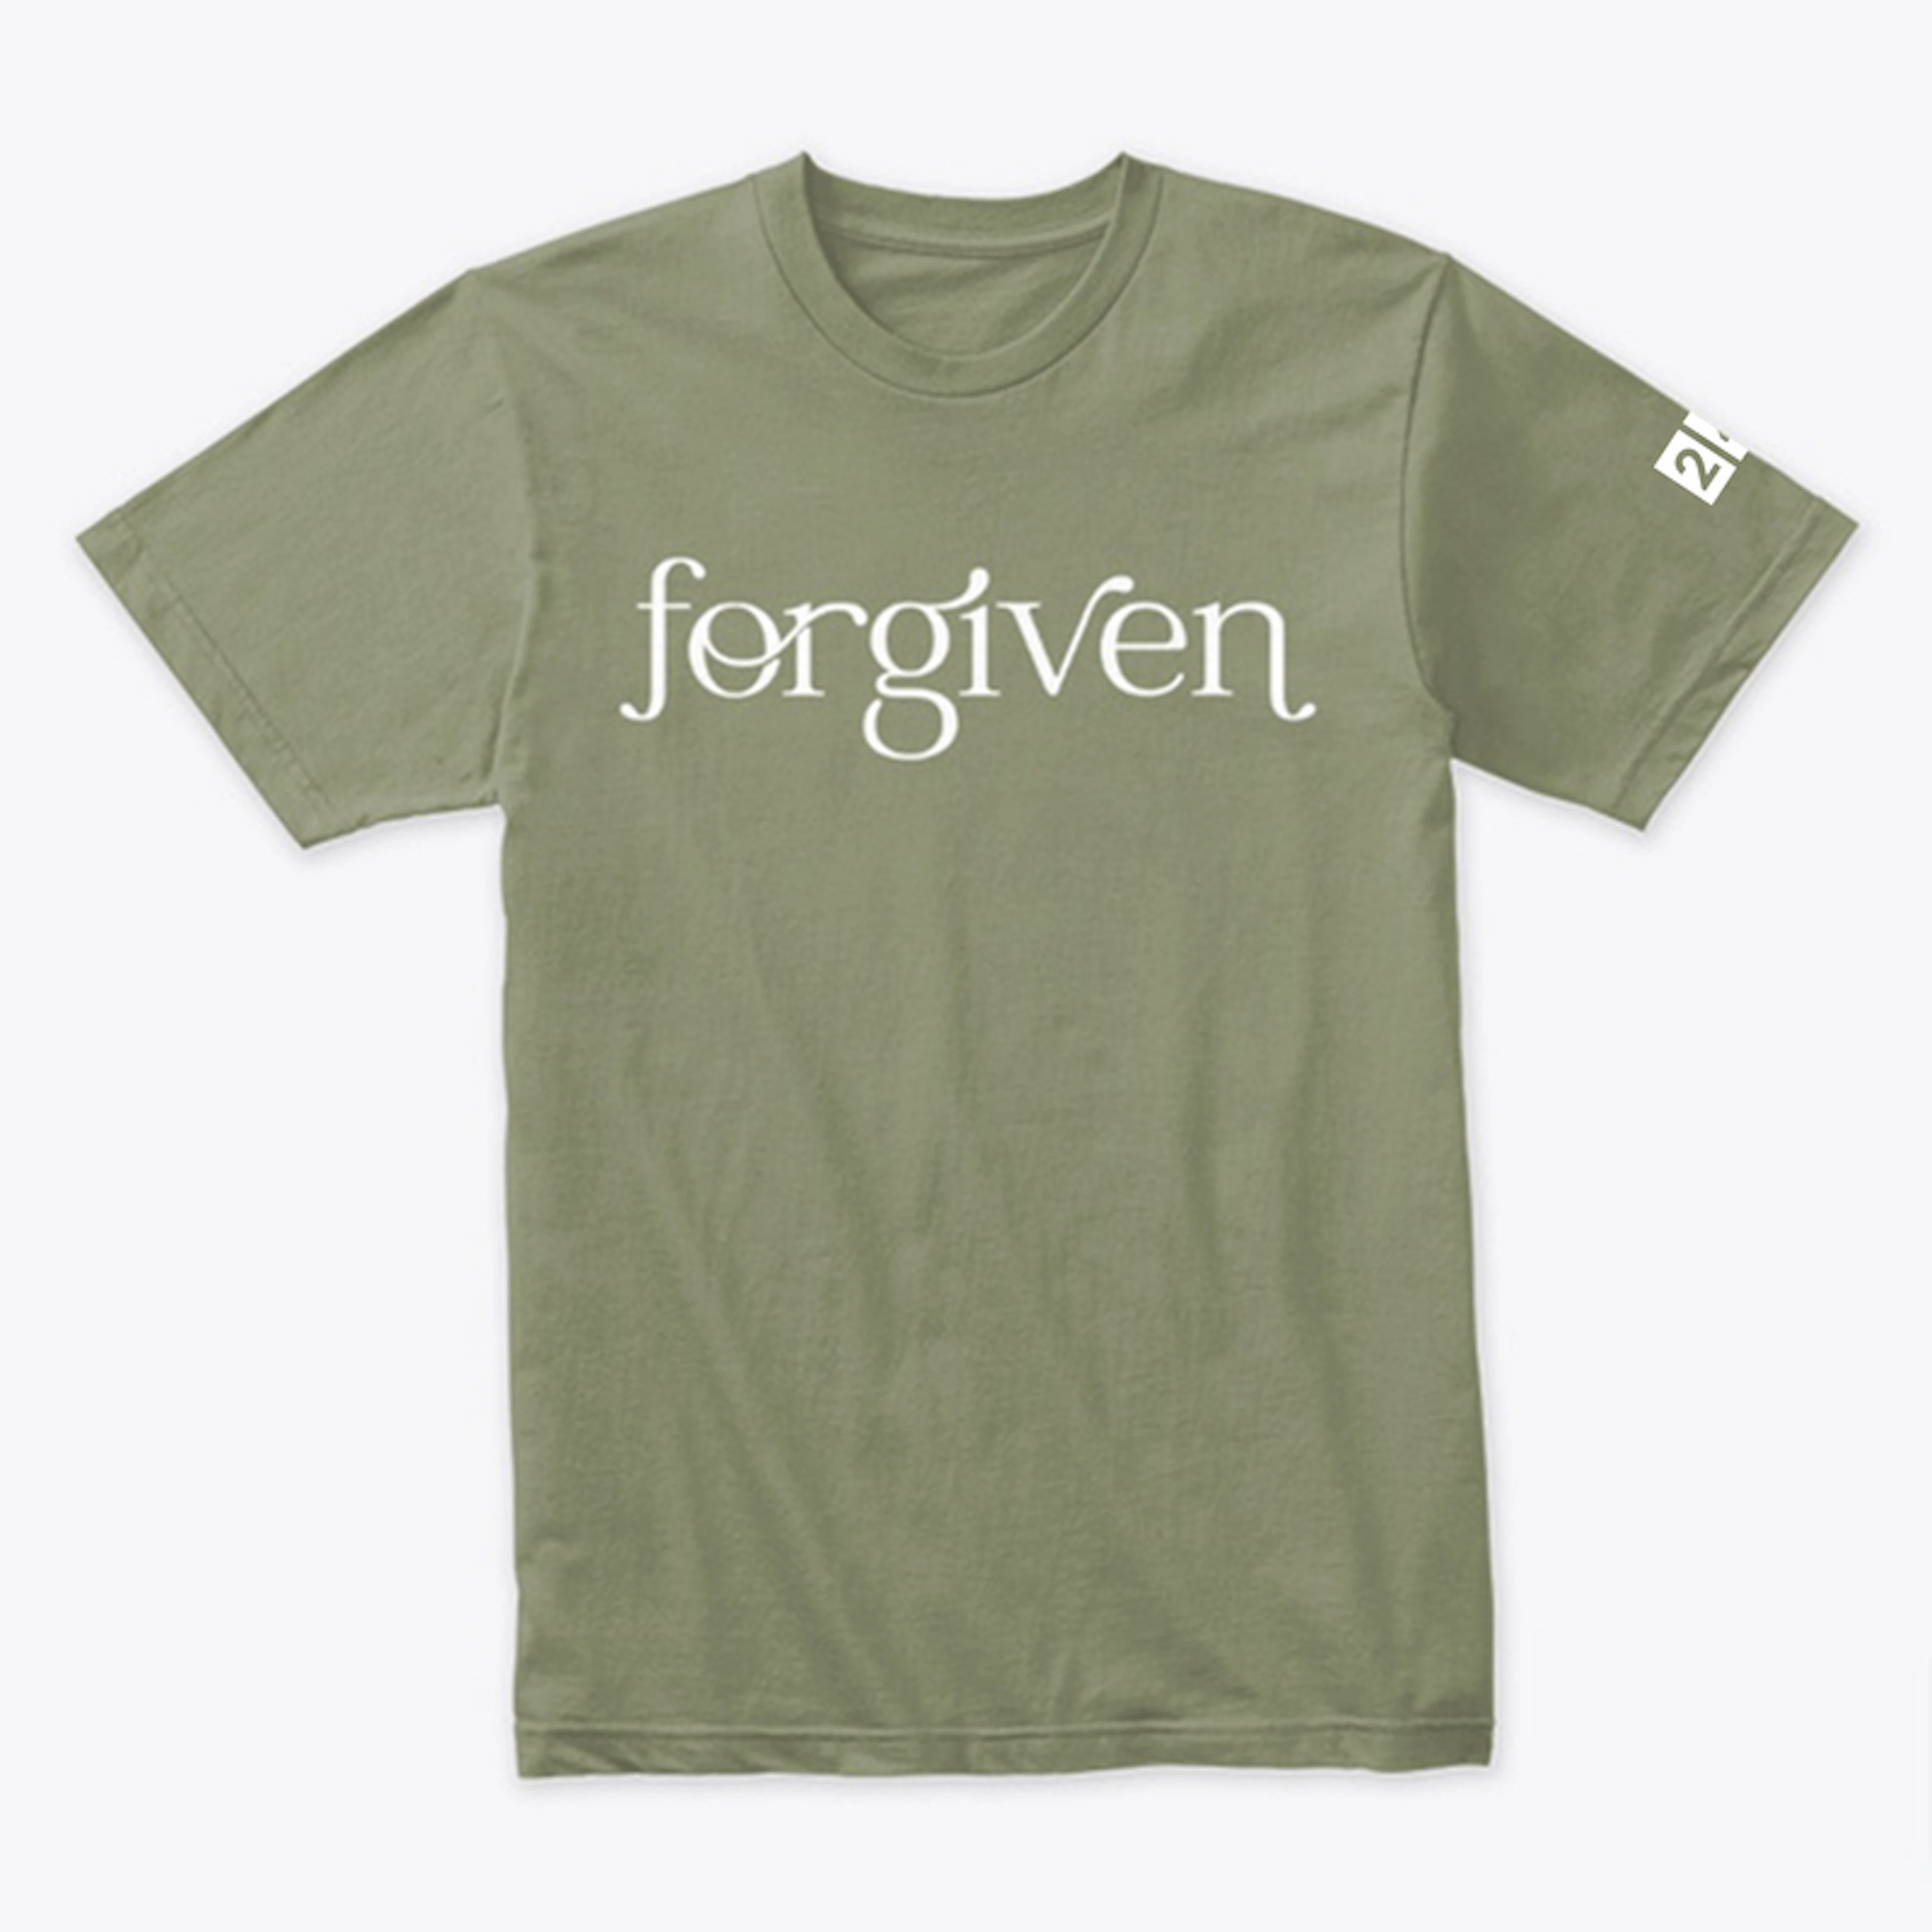 Forgiven - Tshirt